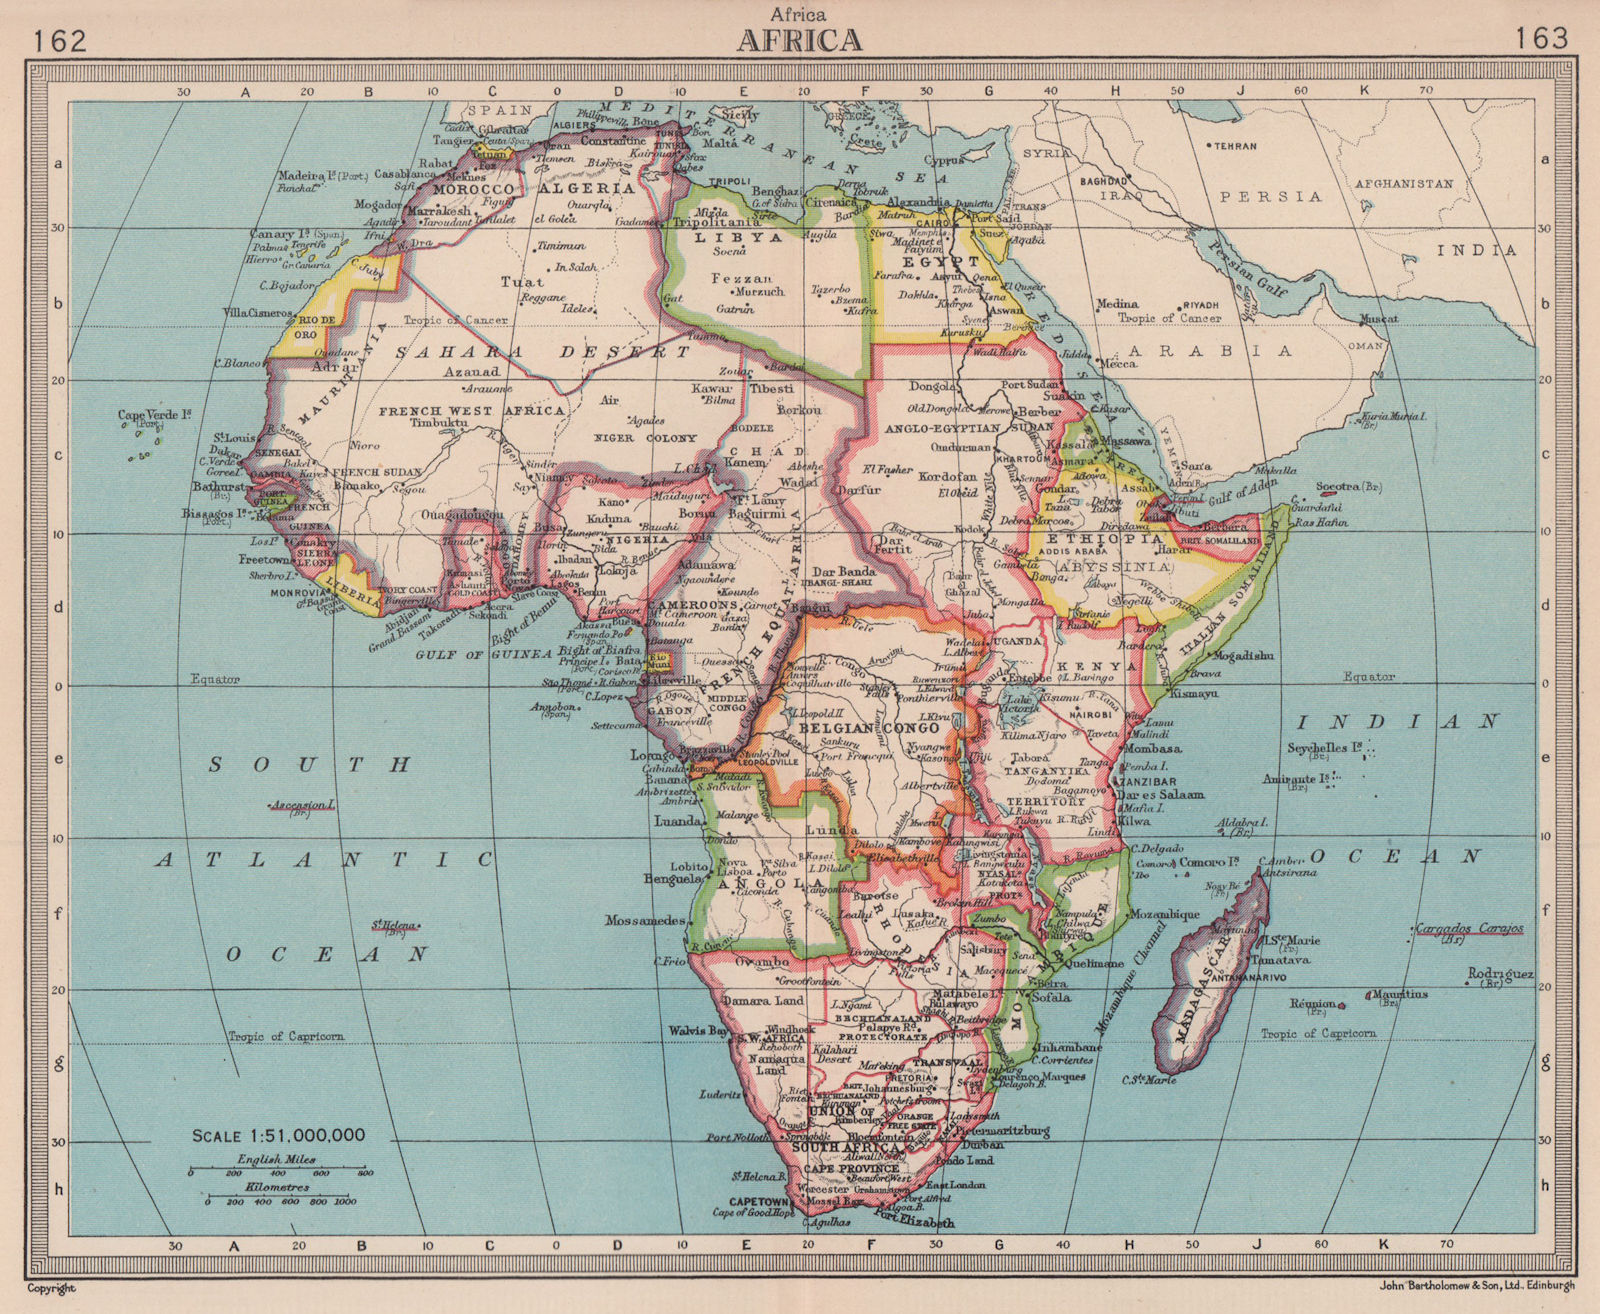 Africa. French West/Equatorial Africa. Belgian Congo. BARTHOLOMEW 1949 old map